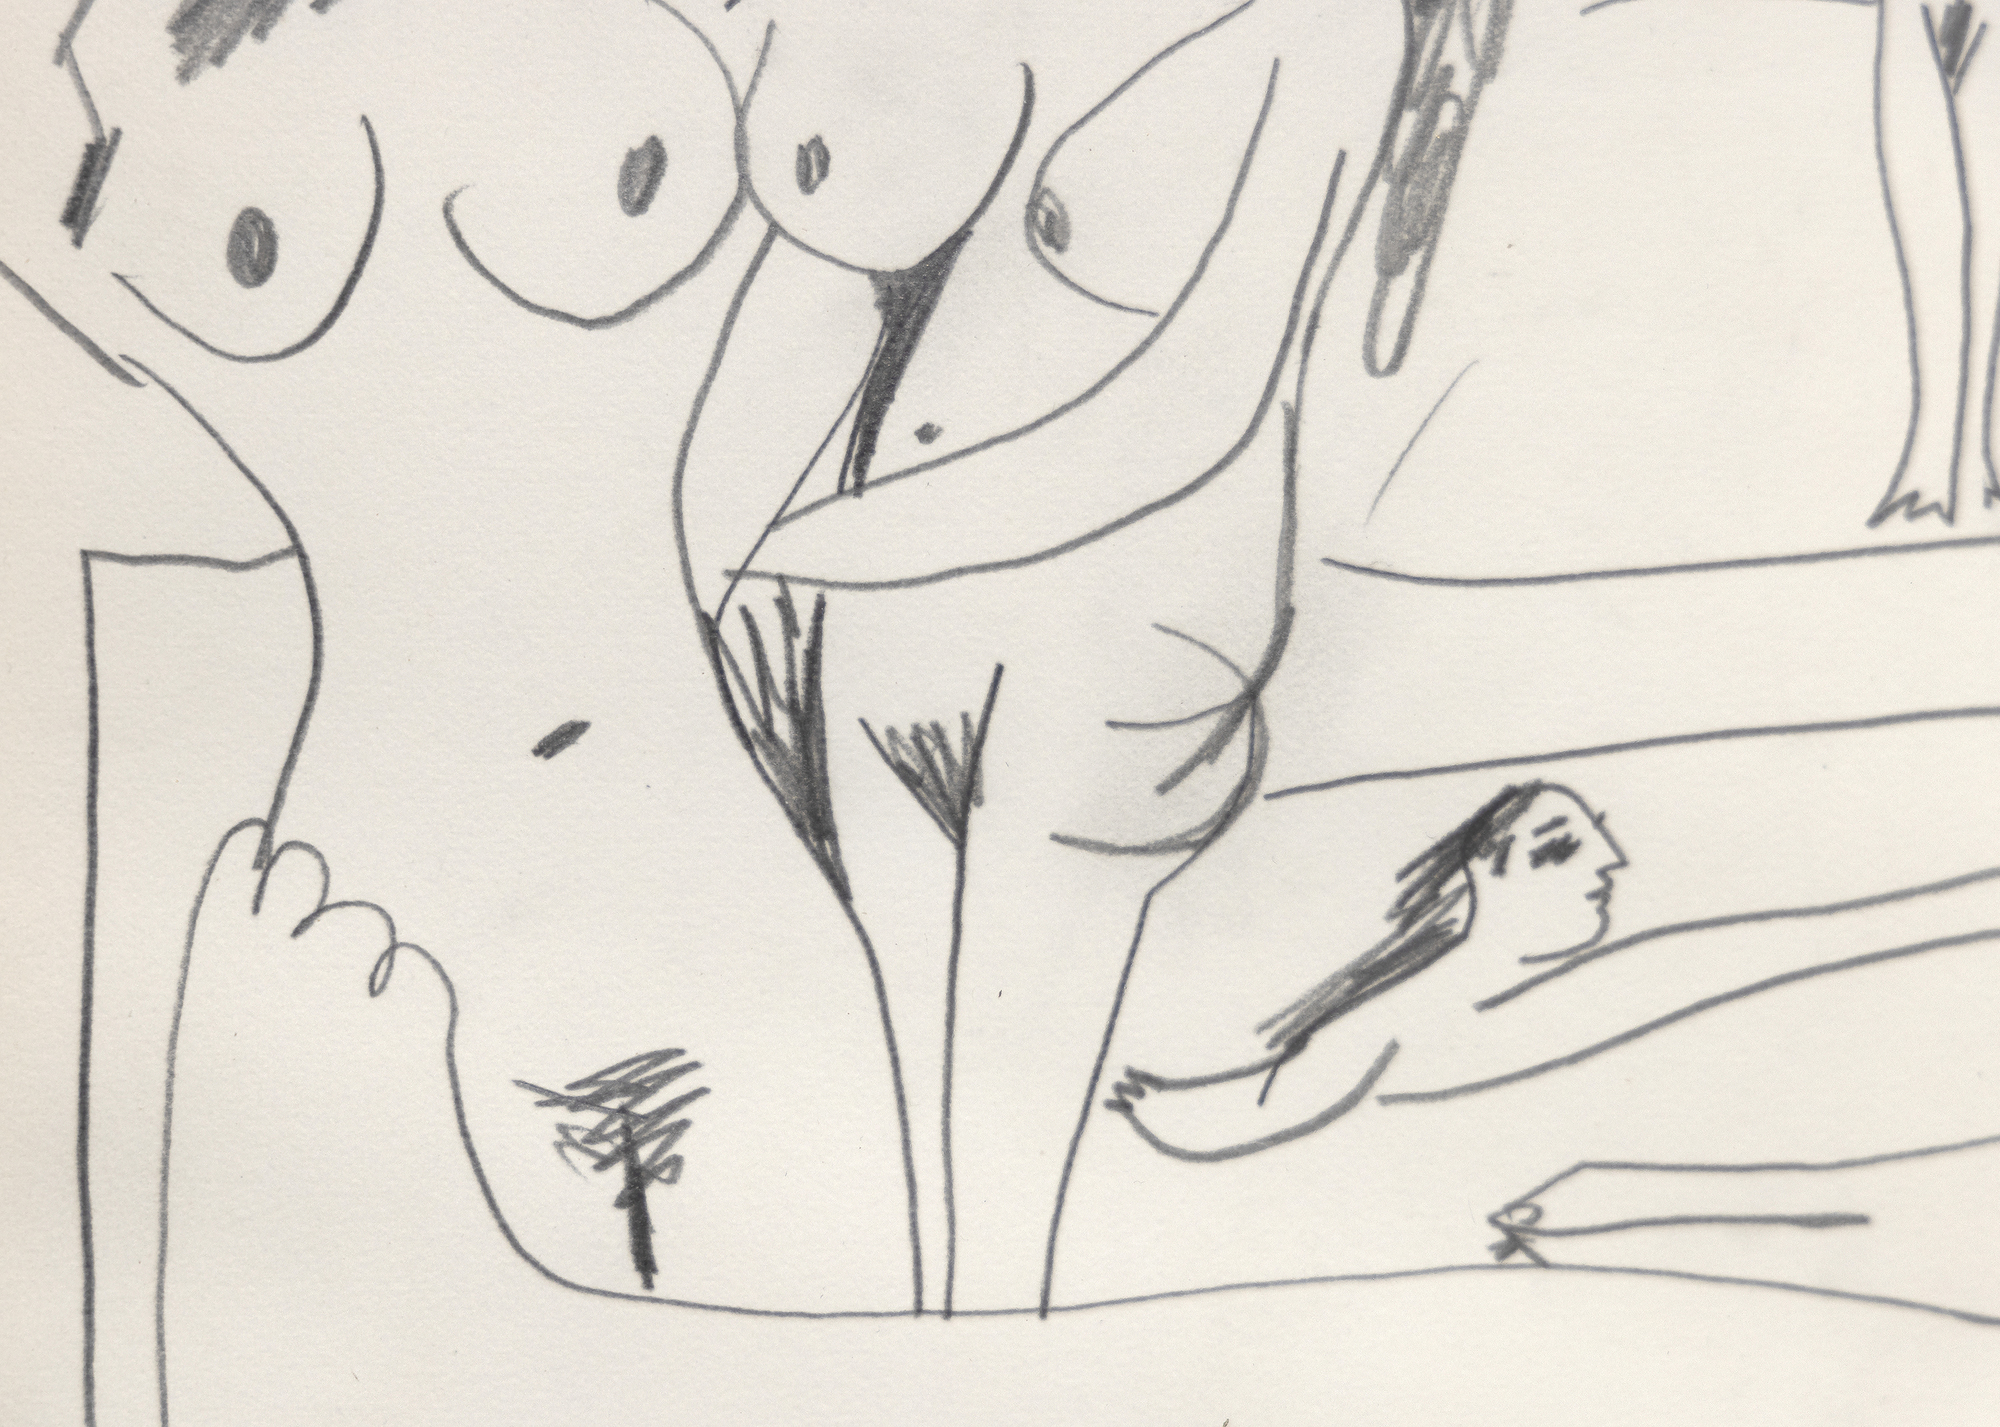 Las figuras de Nues se desarrollan libremente en torno a una figura central de odalisca de una manera que sugiere un tema que ocupaba a Picasso ya en 1906, el de las indulgencias femeninas en un entorno de harén.  Al describir sus últimos dibujos, Picasso señaló que "uno nunca sabe lo que va a salir, pero en cuanto el dibujo se pone en marcha, nace una historia o una idea... Me paso hora tras hora mientras dibujo, observando a mis criaturas y pensando en las locuras que hacen... Es muy divertido, créeme". Nues es una evocación de esa apreciación, un retozo libre como sólo Picasso puede lograr. Entre las muchas poses, la figura abreviada nadando en la piscina es especialmente encantadora.